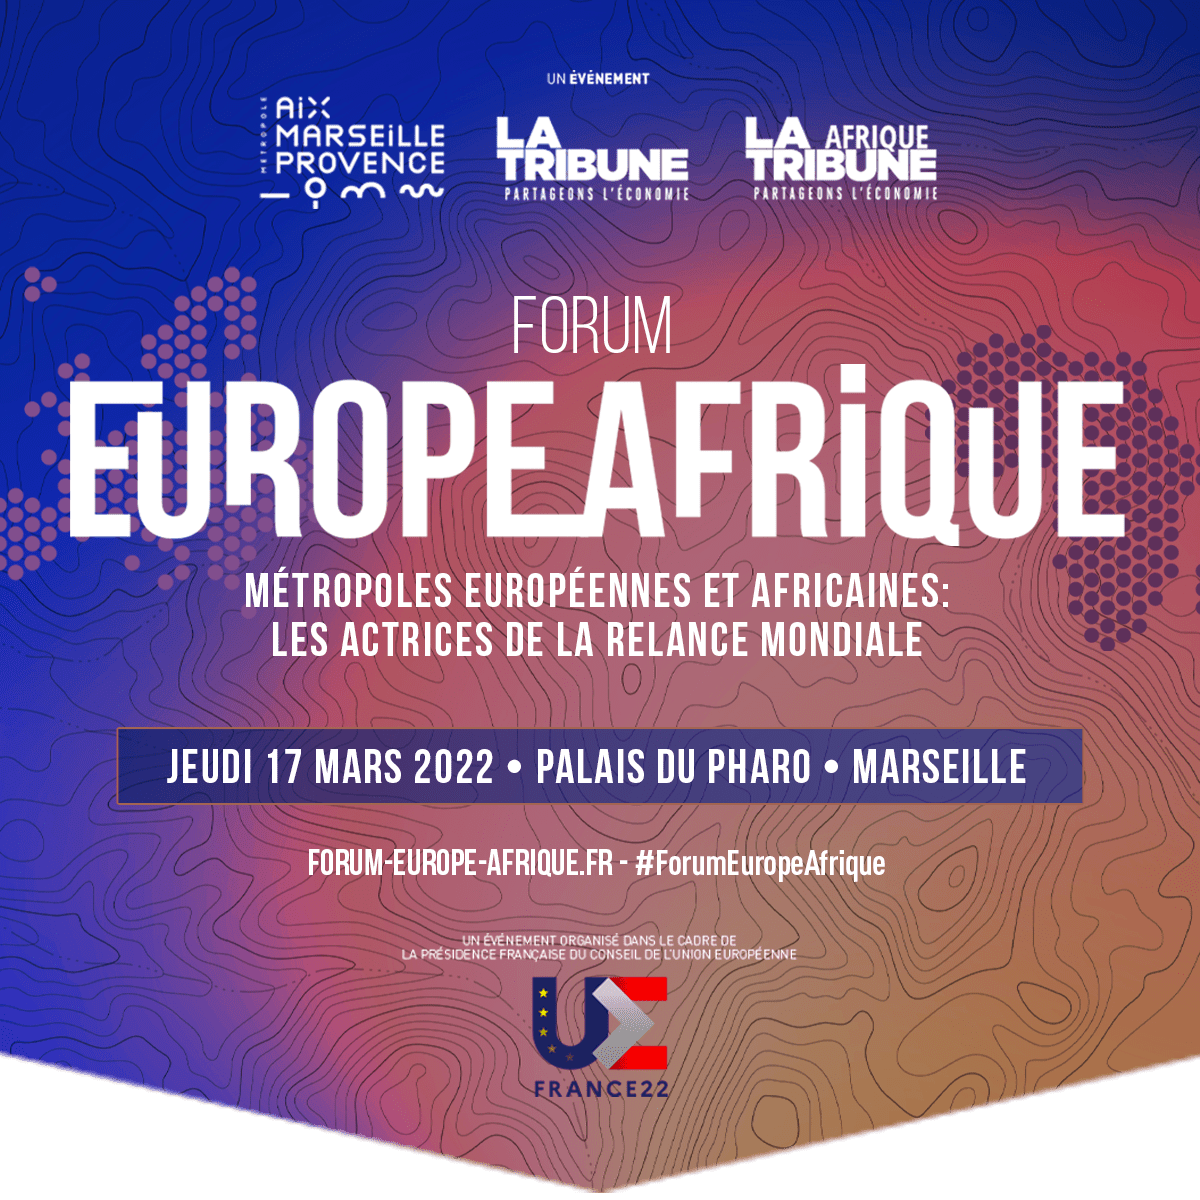 Rendez-vous au #ForumEuropeAfrique le 17 mars prochain au Palais du Pharo à Marseille